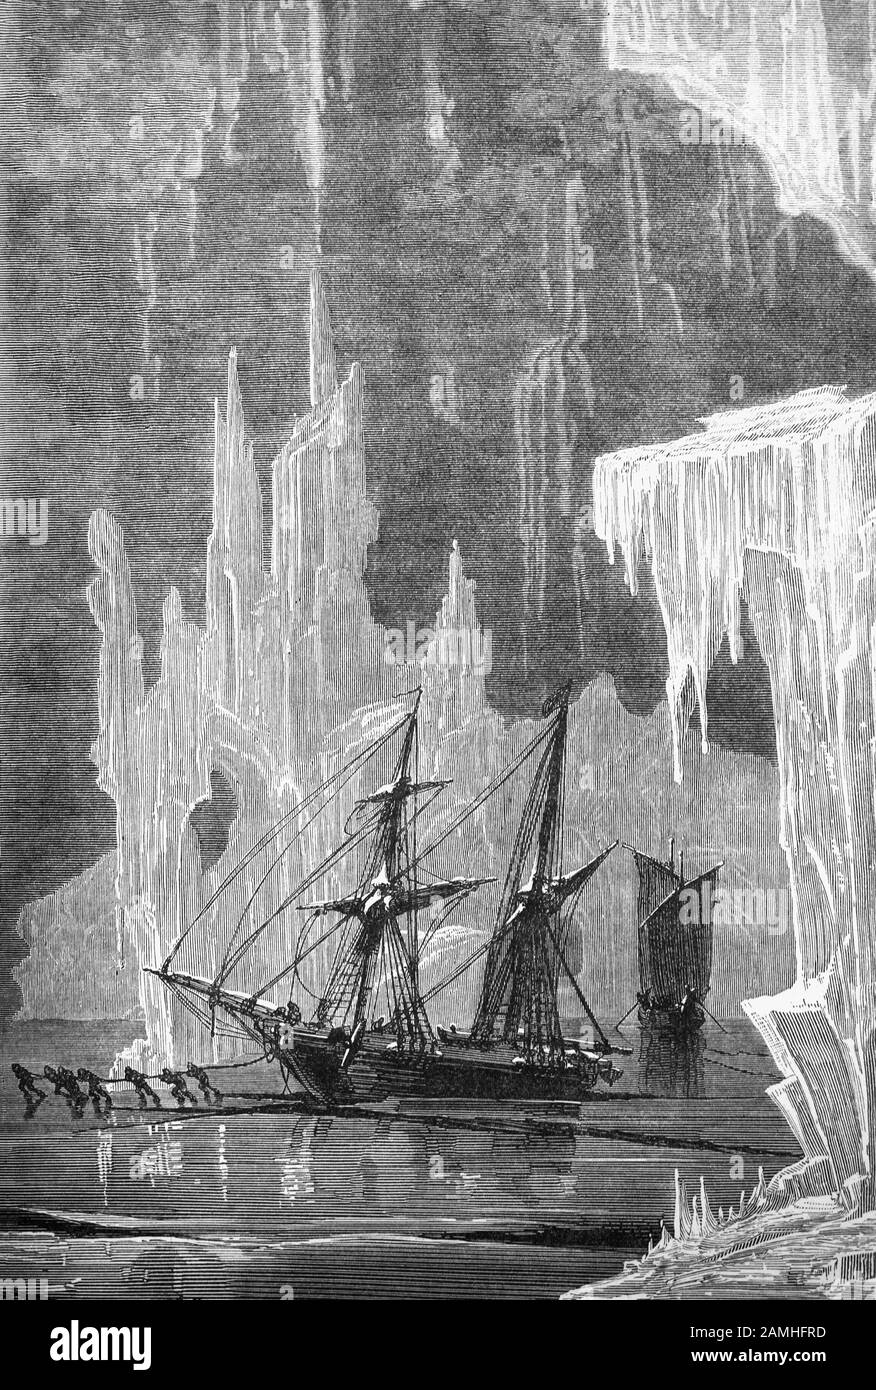 L'équipage transporte un voilier sur la glace - et à travers une chaîne de icebergs alors qu'ils cherchent le passage nord-ouest à travers l'Arctique. Banque D'Images